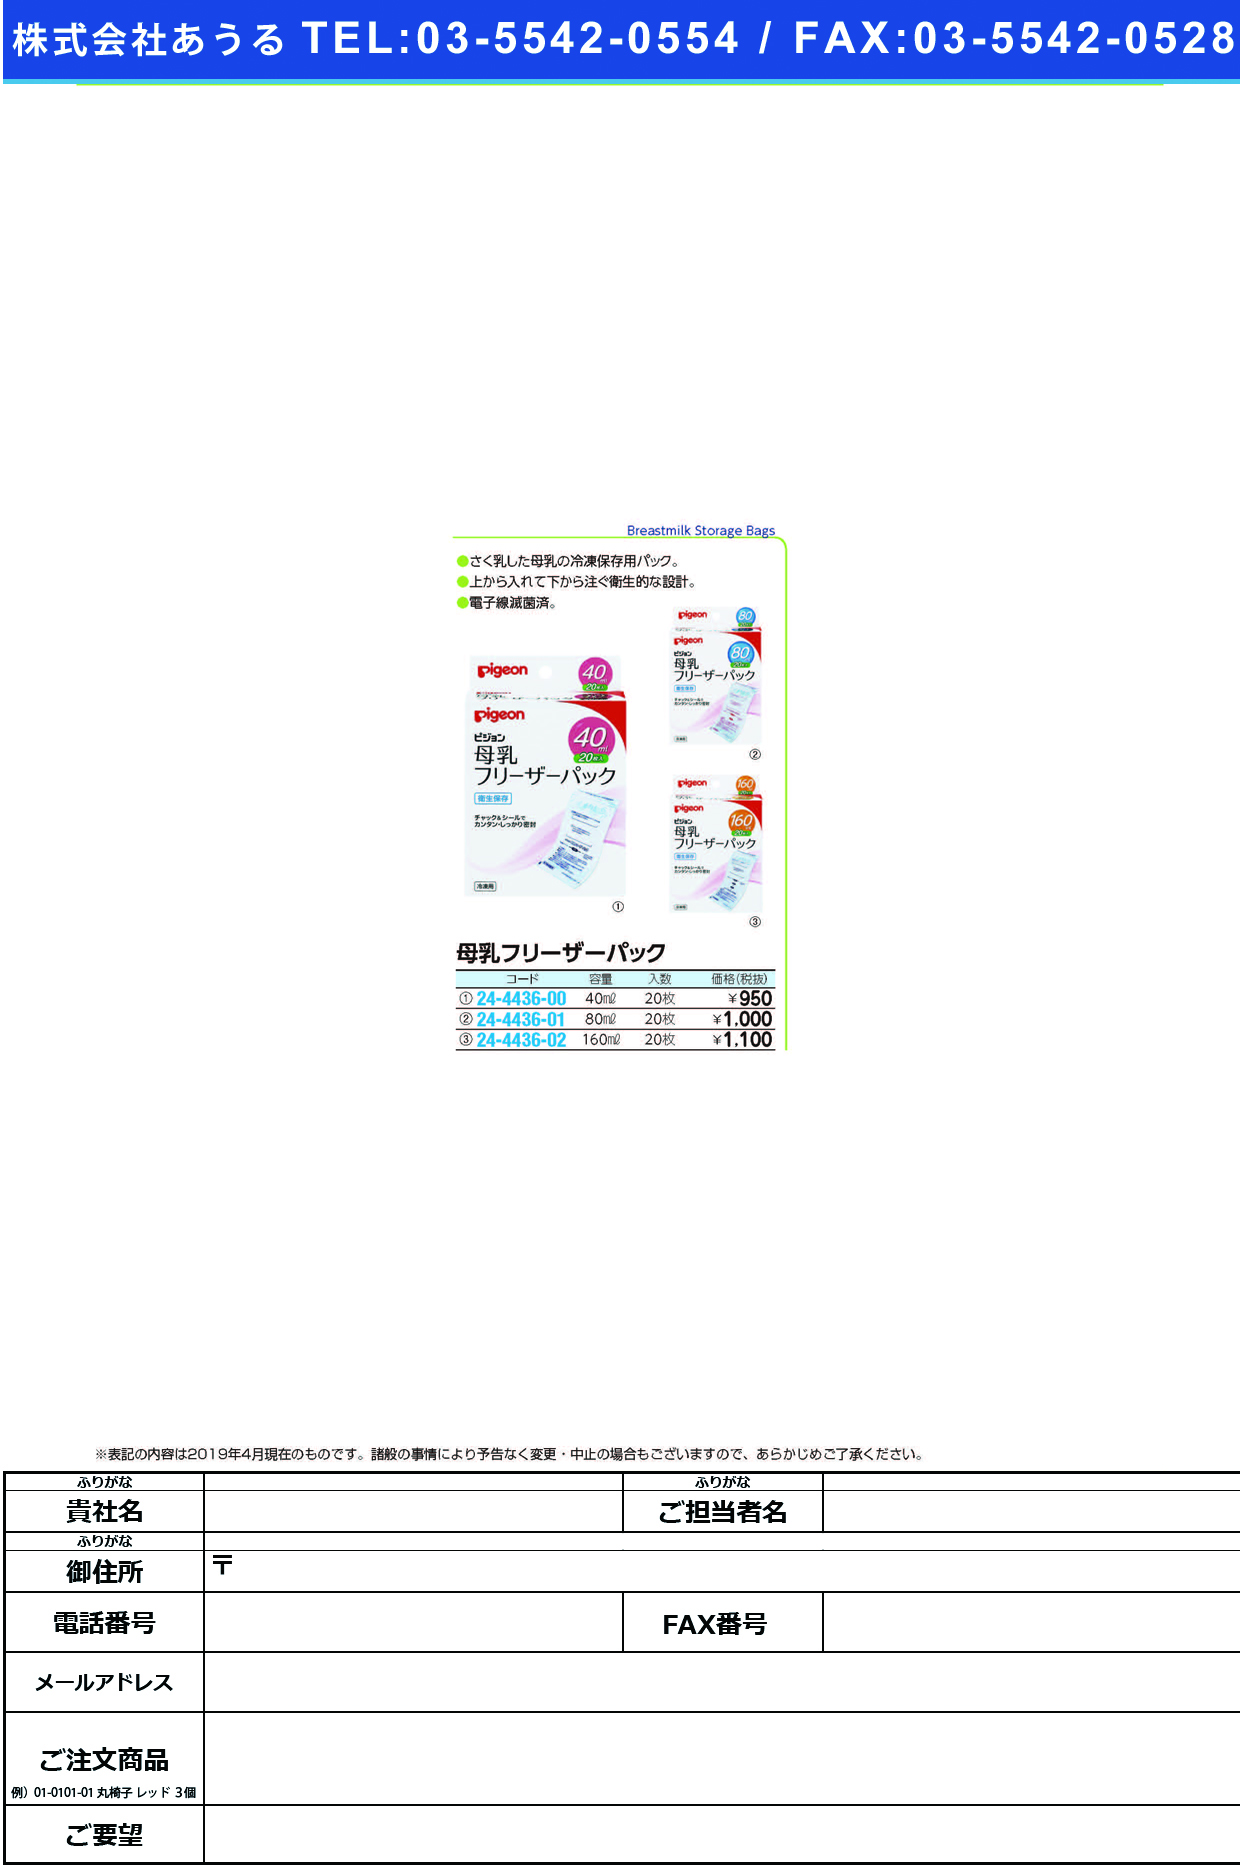 (24-4436-01)母乳フリーザーパック 16262(80ML)20ﾏｲｲﾘ ﾎﾞﾆｭｳﾌﾘｰｻﾞｰﾊﾟｯｸ(ピジョン)【1個単位】【2019年カタログ商品】